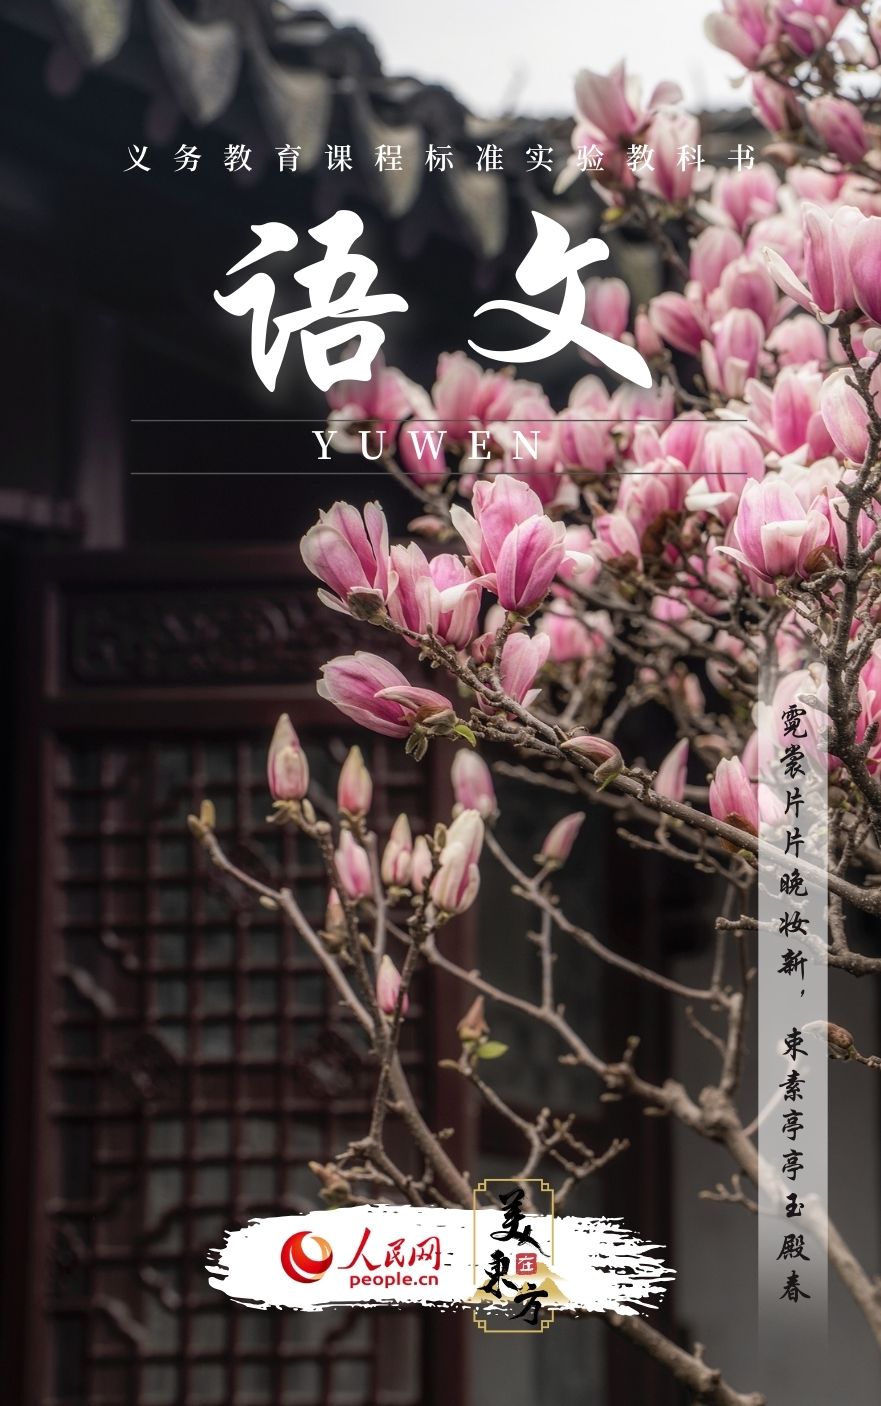 江蘇蘇州網師園玉蘭一樹繁花迎春來。